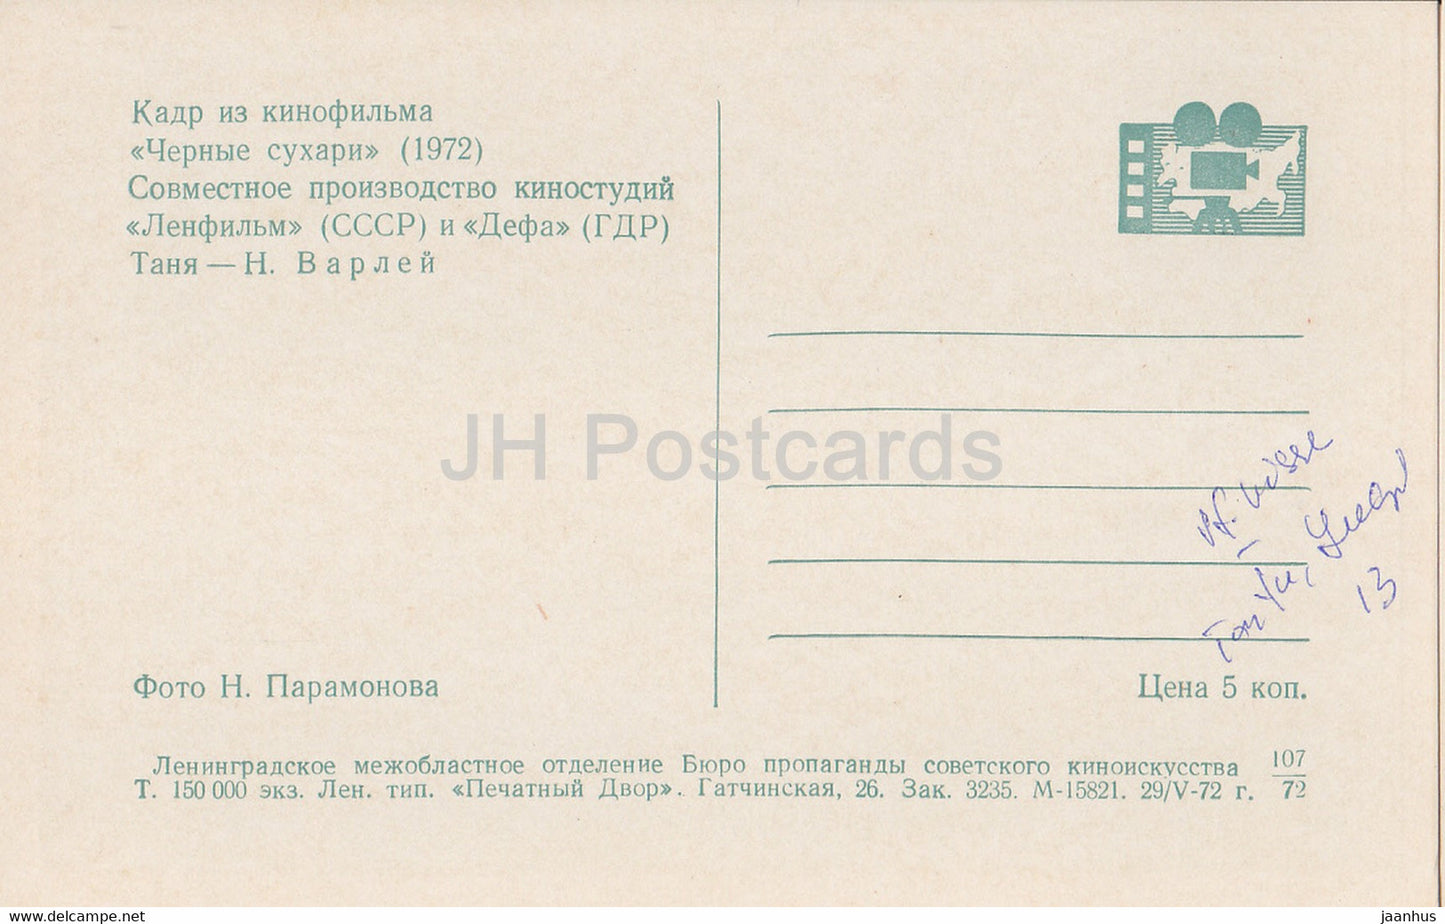 Black Crackers - actress N. Varley - 1 - Movie - Film - soviet - 1972 - Russia USSR - unused